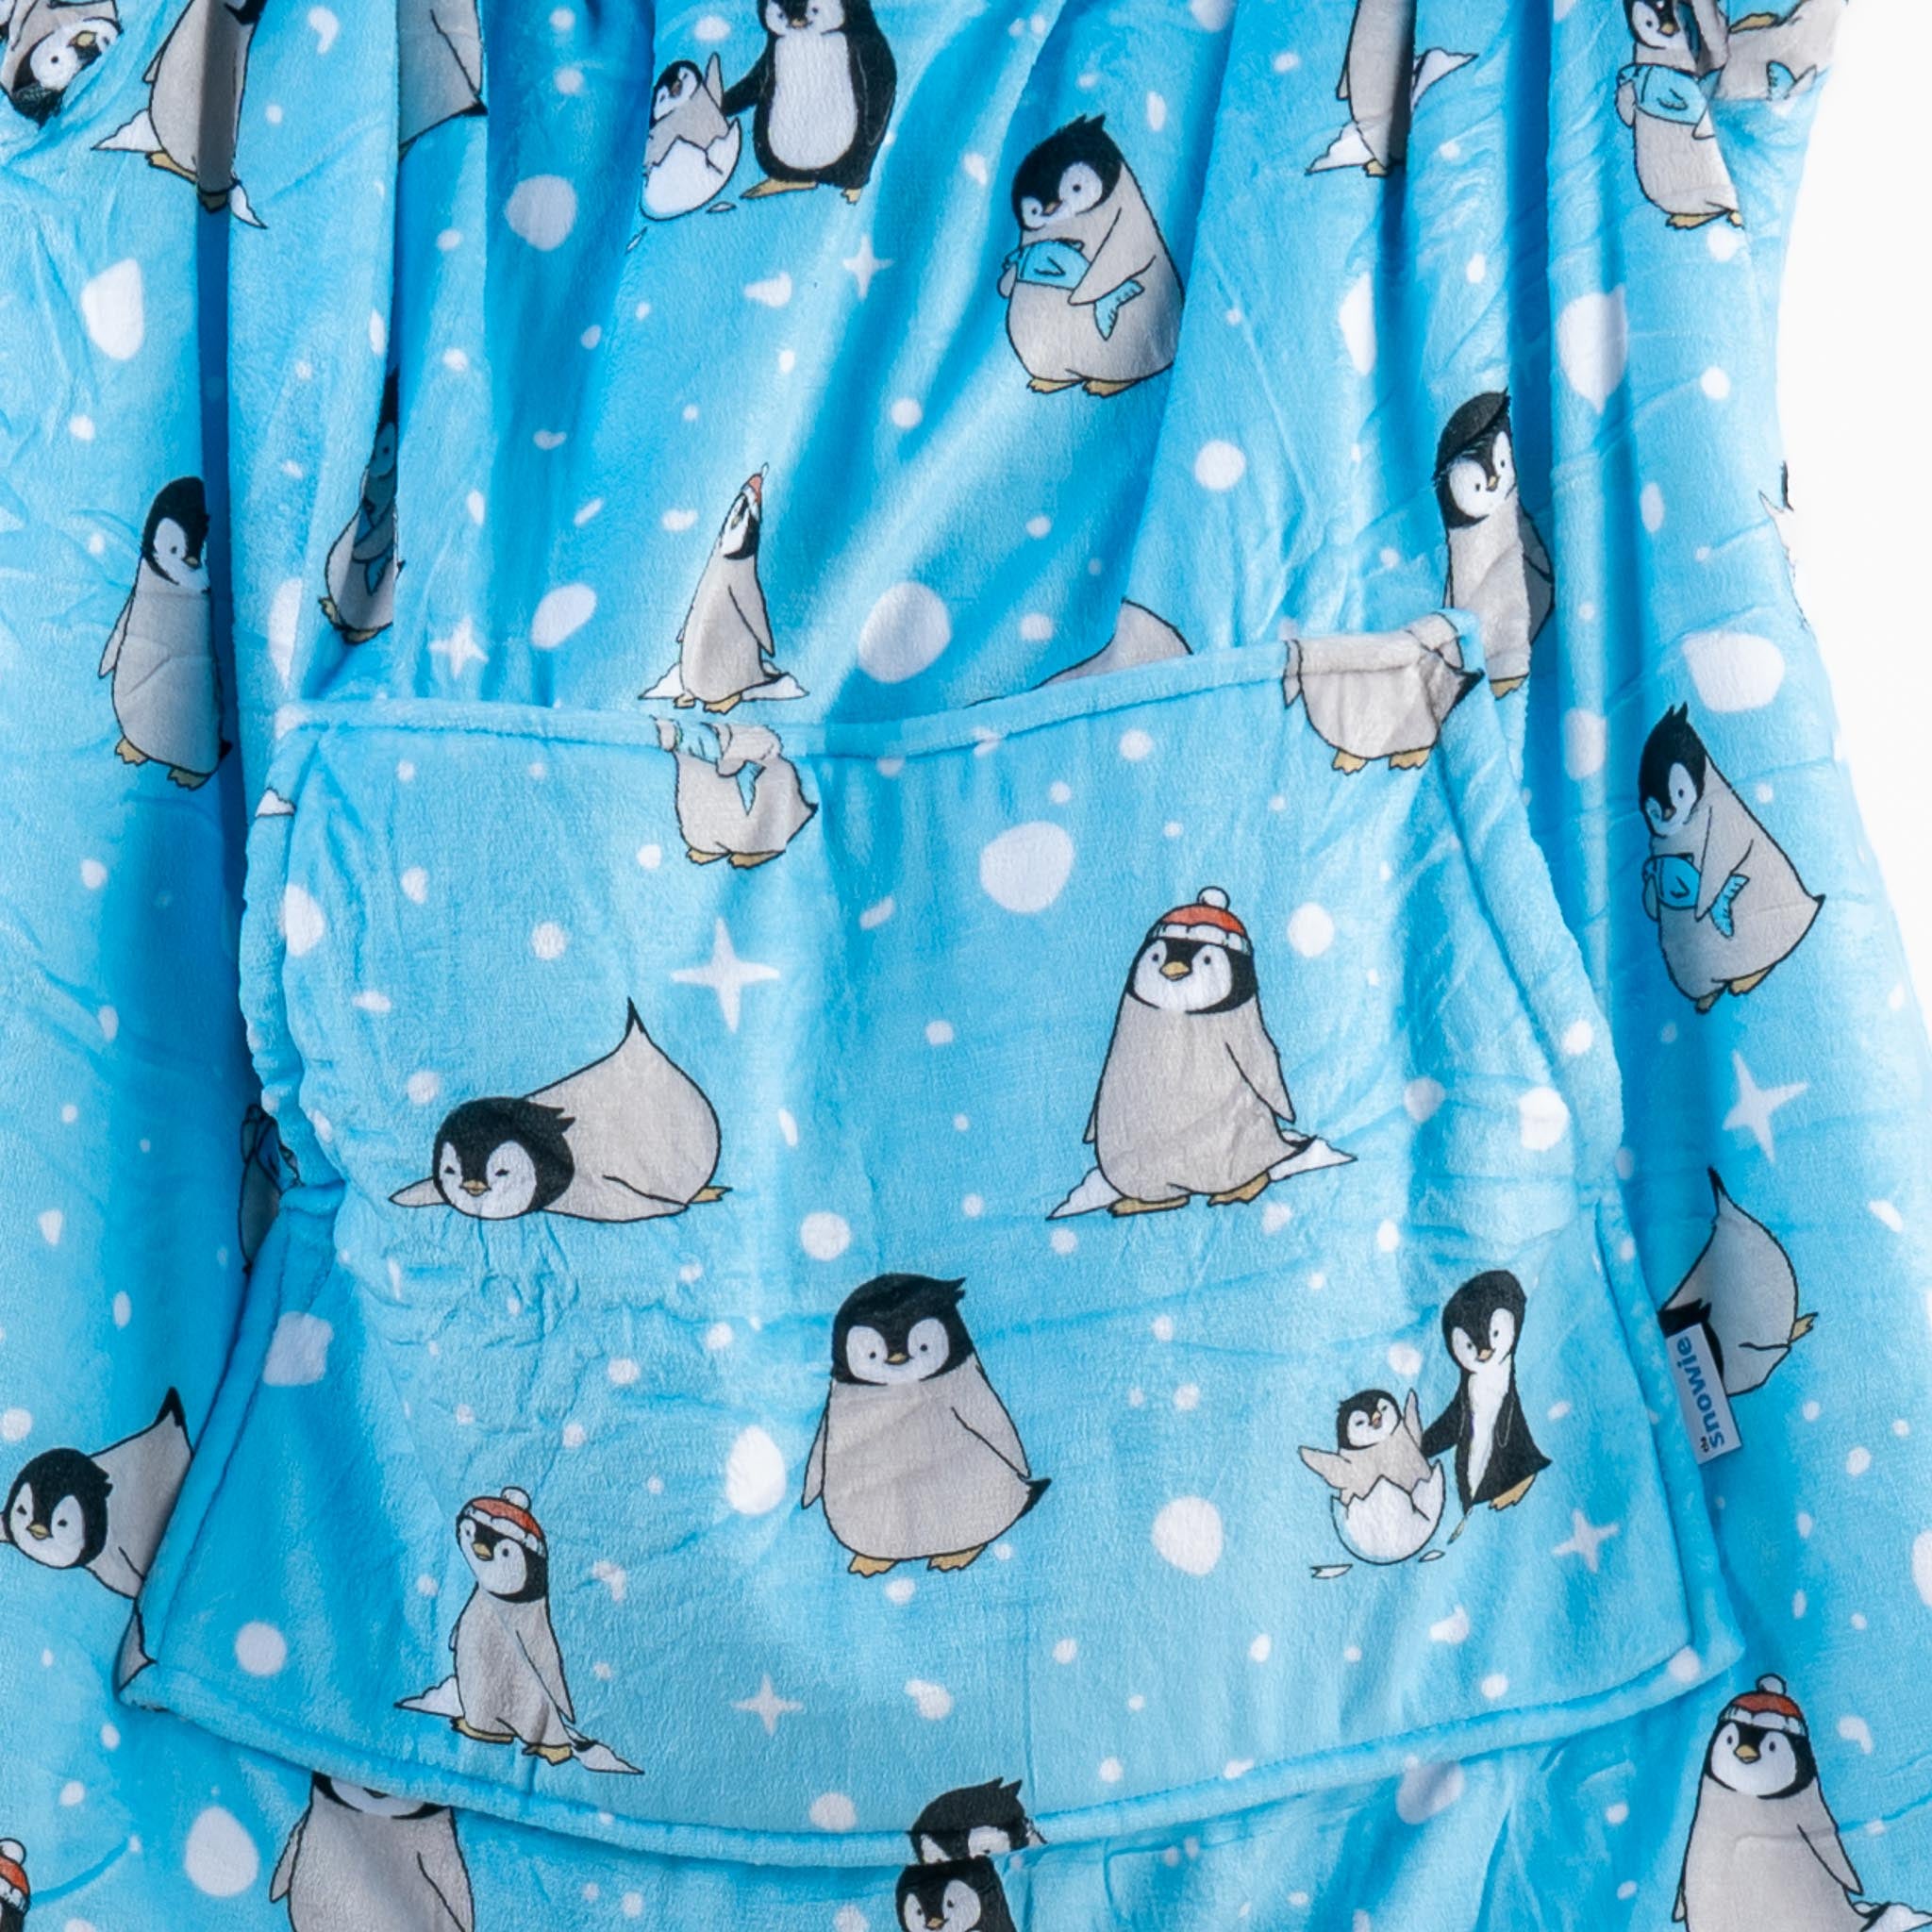 Snowie Pinguino